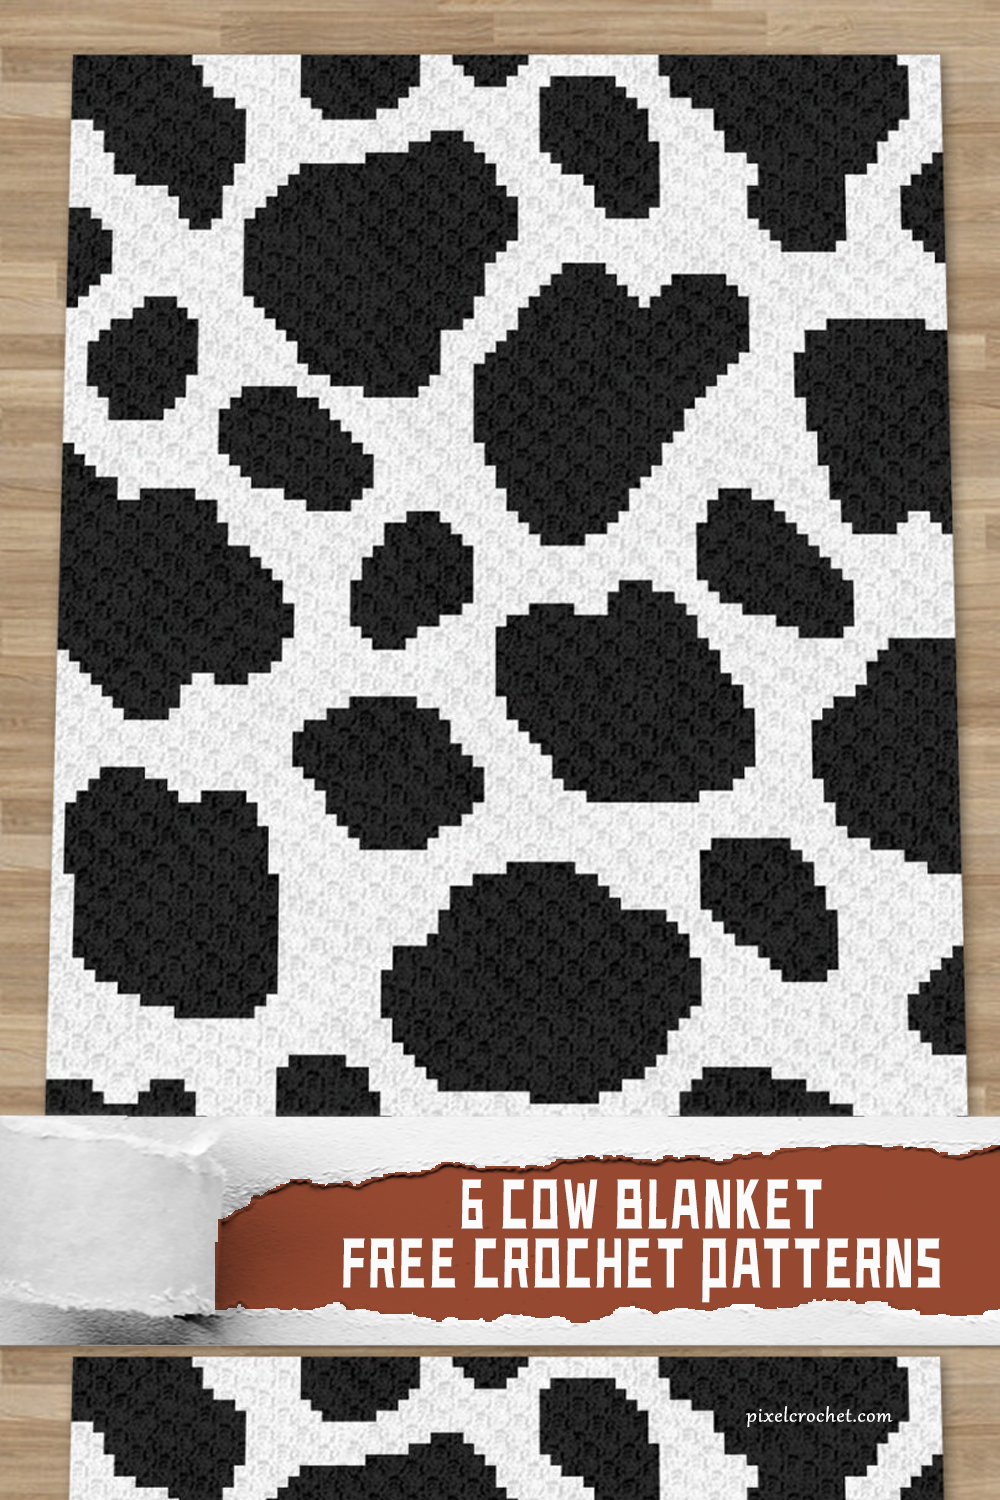 6 Cow Blanket Crochet Patterns - FREE